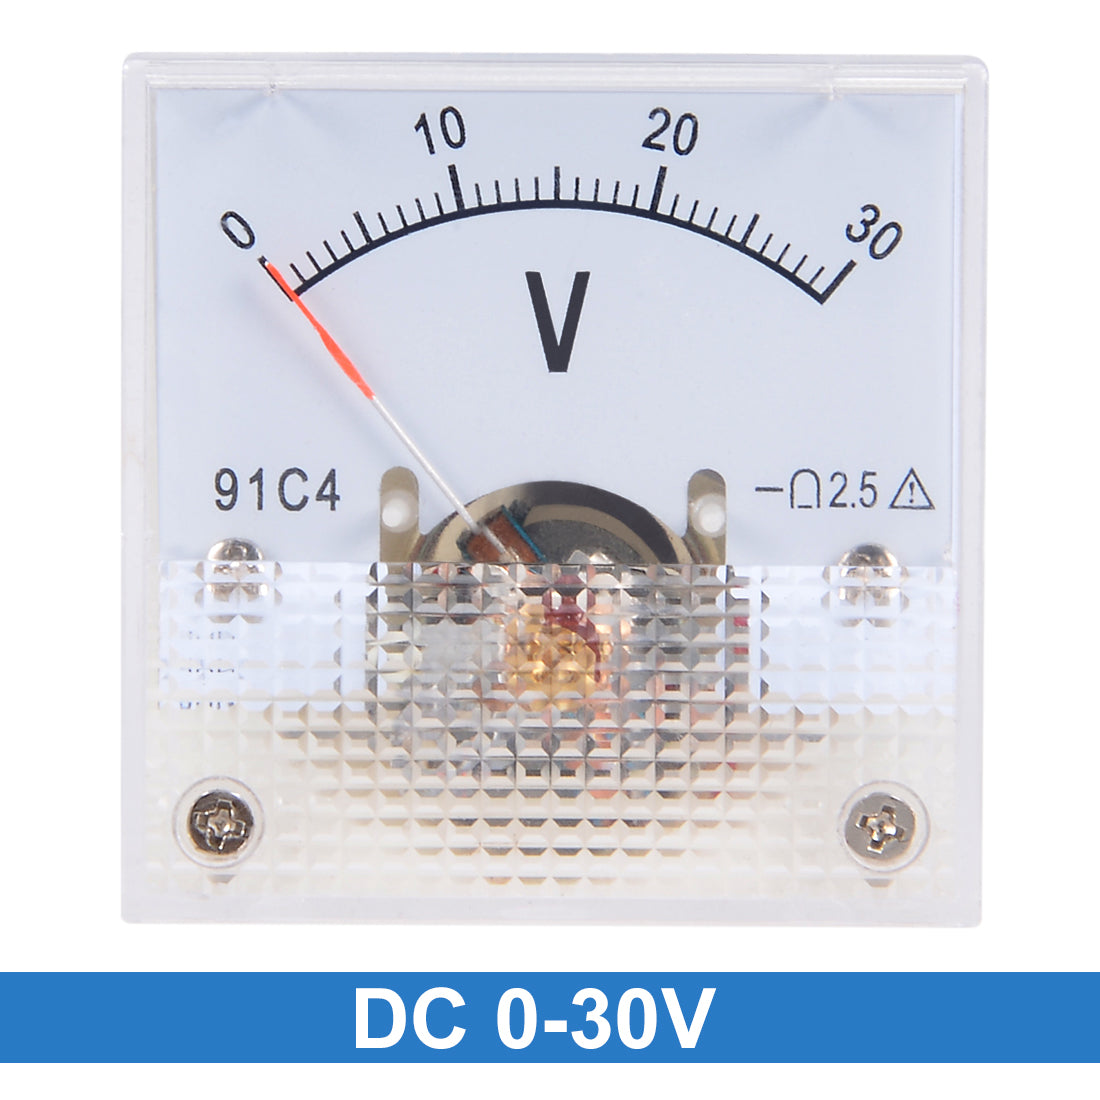 uxcell Uxcell DC 0-30V Analog Panel Voltage Gauge Volt Meter 91C4 2.5% Error